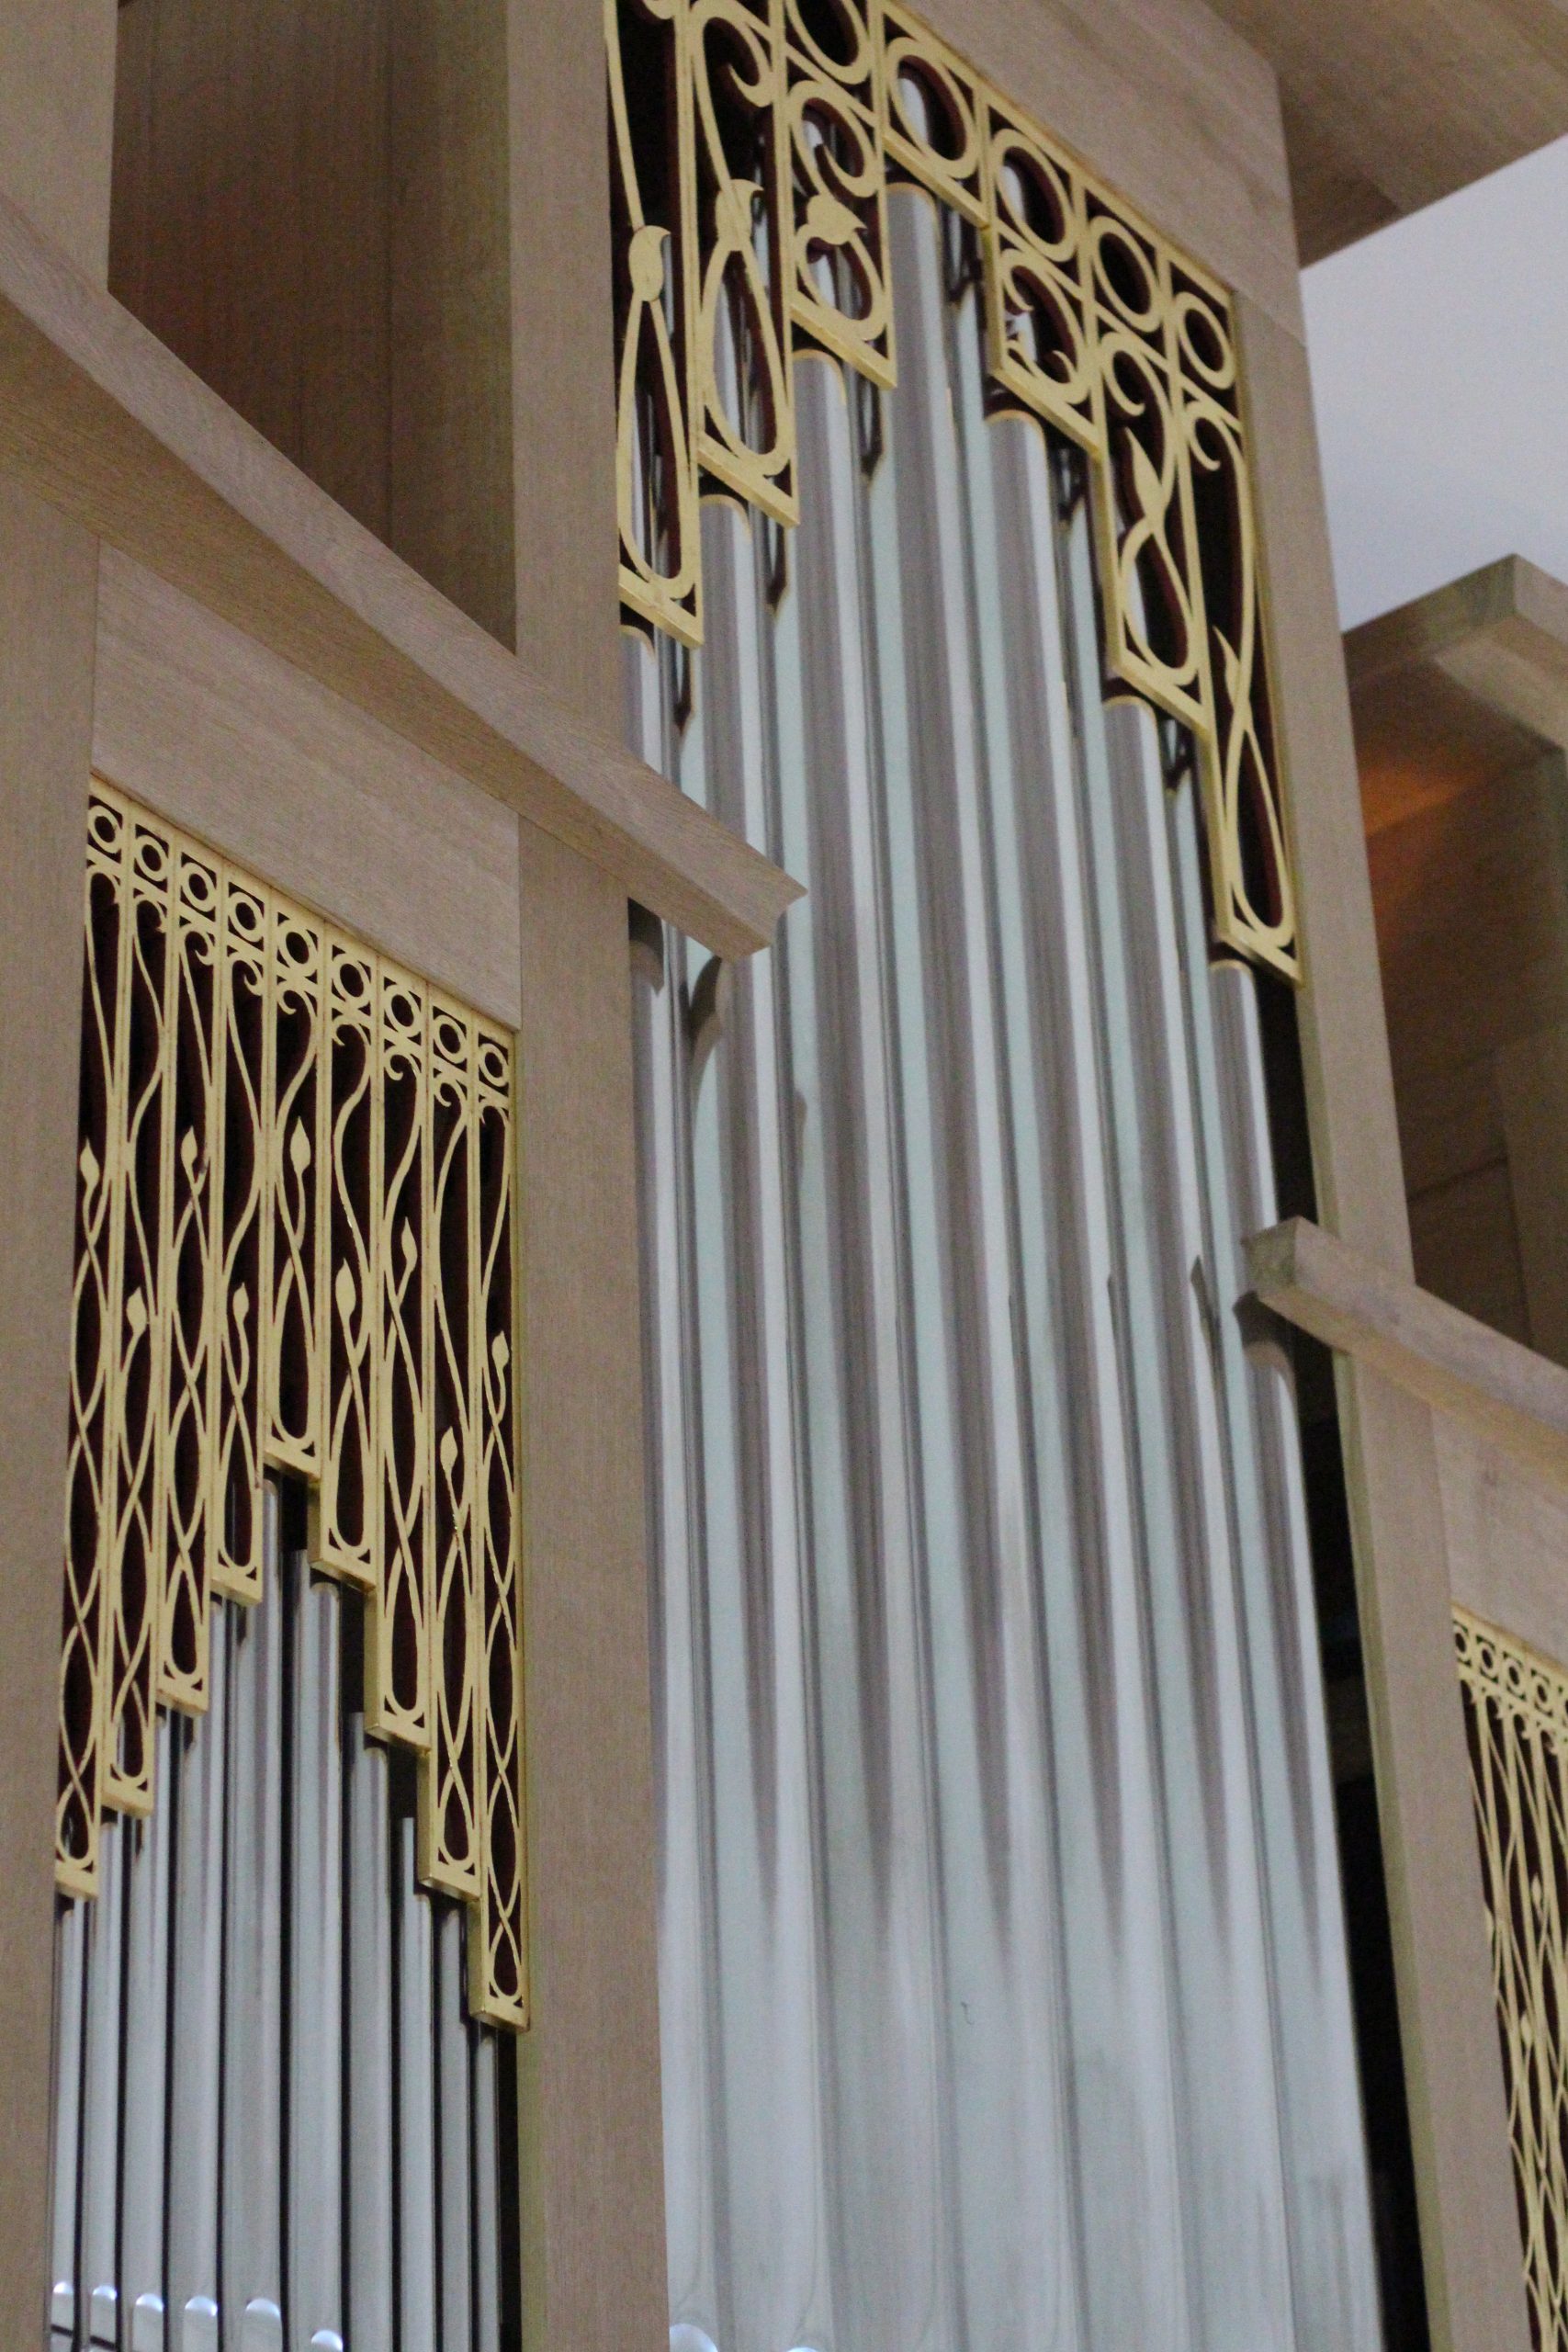 Orgel nach der Restaurierung und Erweiterung. © Nico Trimmel